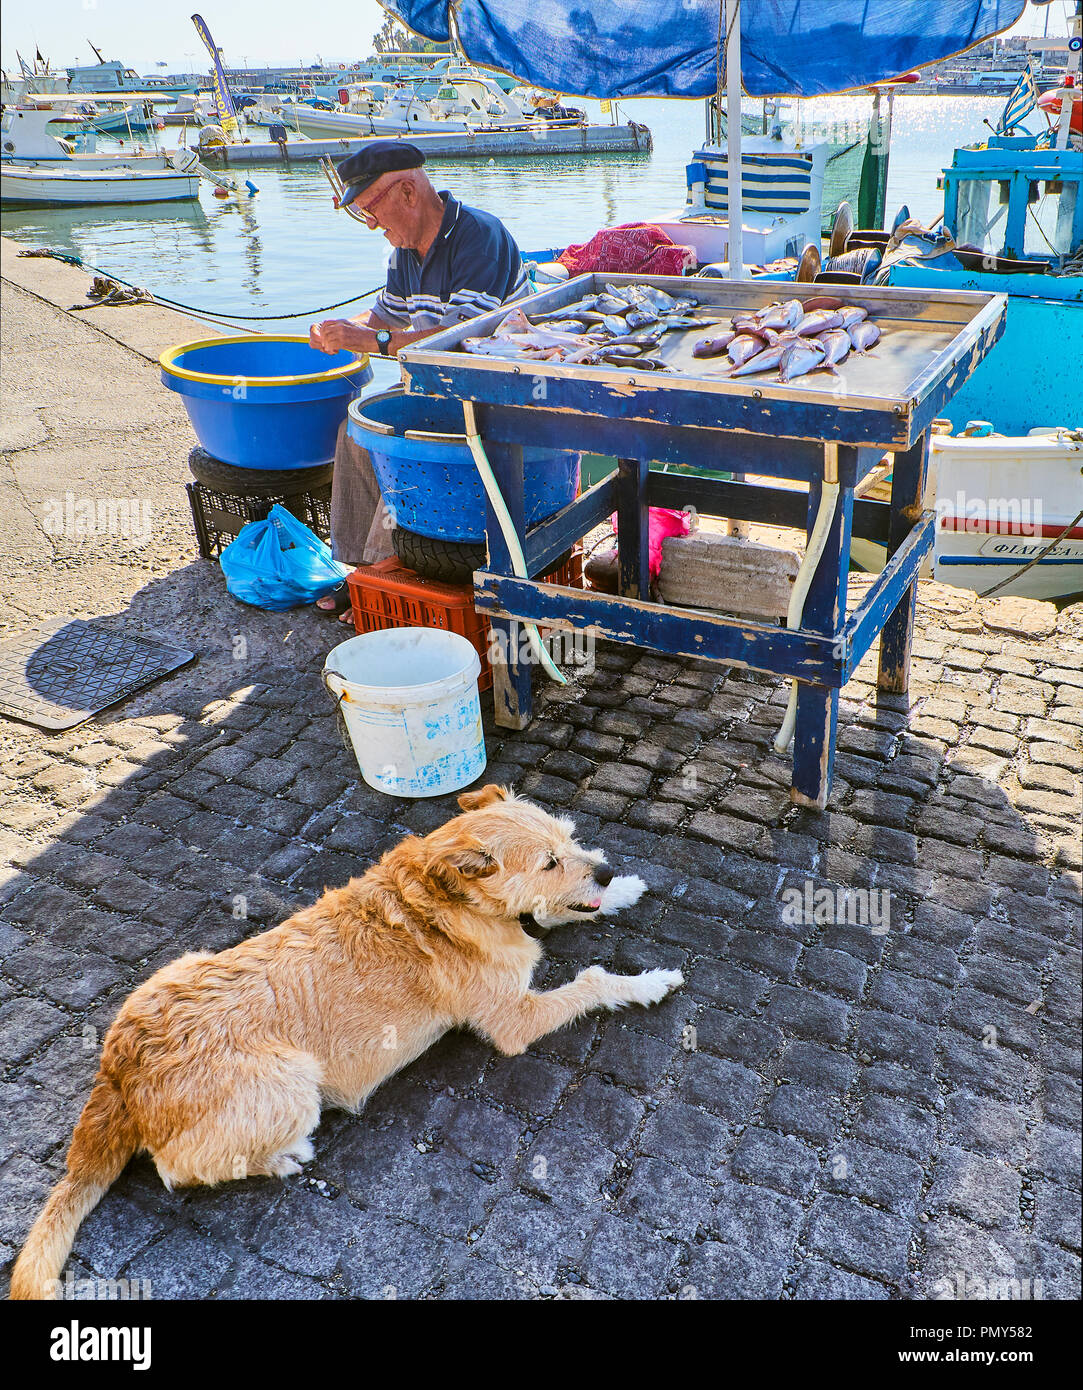 Kos, Grecia - Luglio 4, 2018. Un pescatore greco per la pulizia e la vendita di pesce fresco alla Kos porto di pesca, un'isola greca del Sud Egeo regione, Grecia. Foto Stock